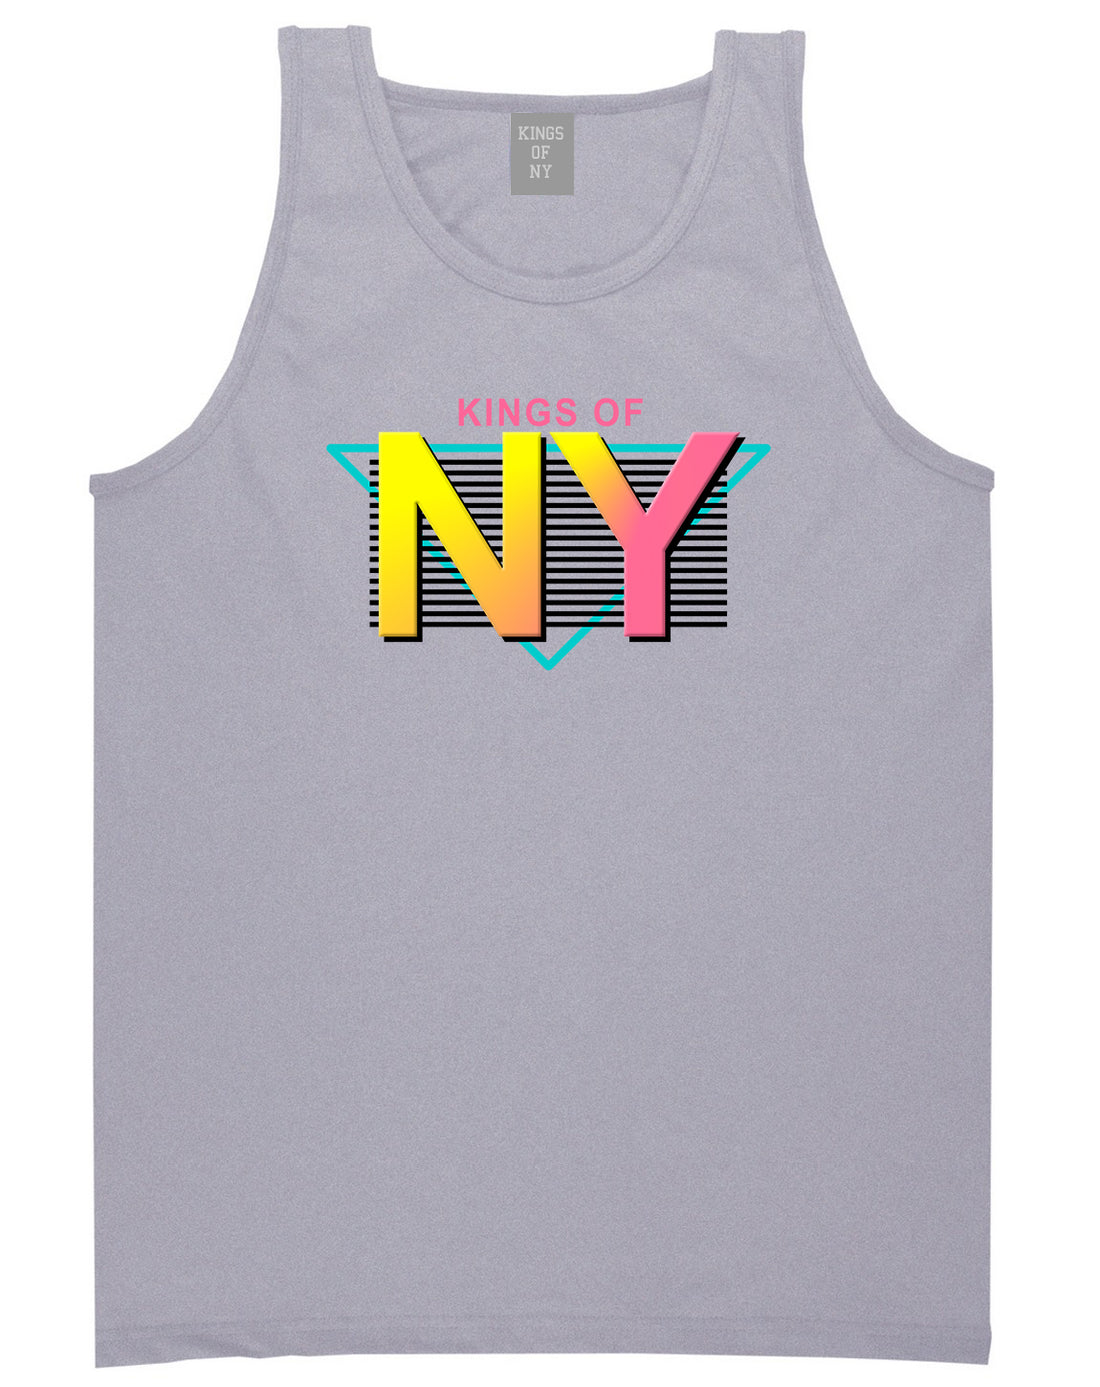 Kings Of NY 80s Retro Mens Tank Top Shirt Grey by Kings Of NY